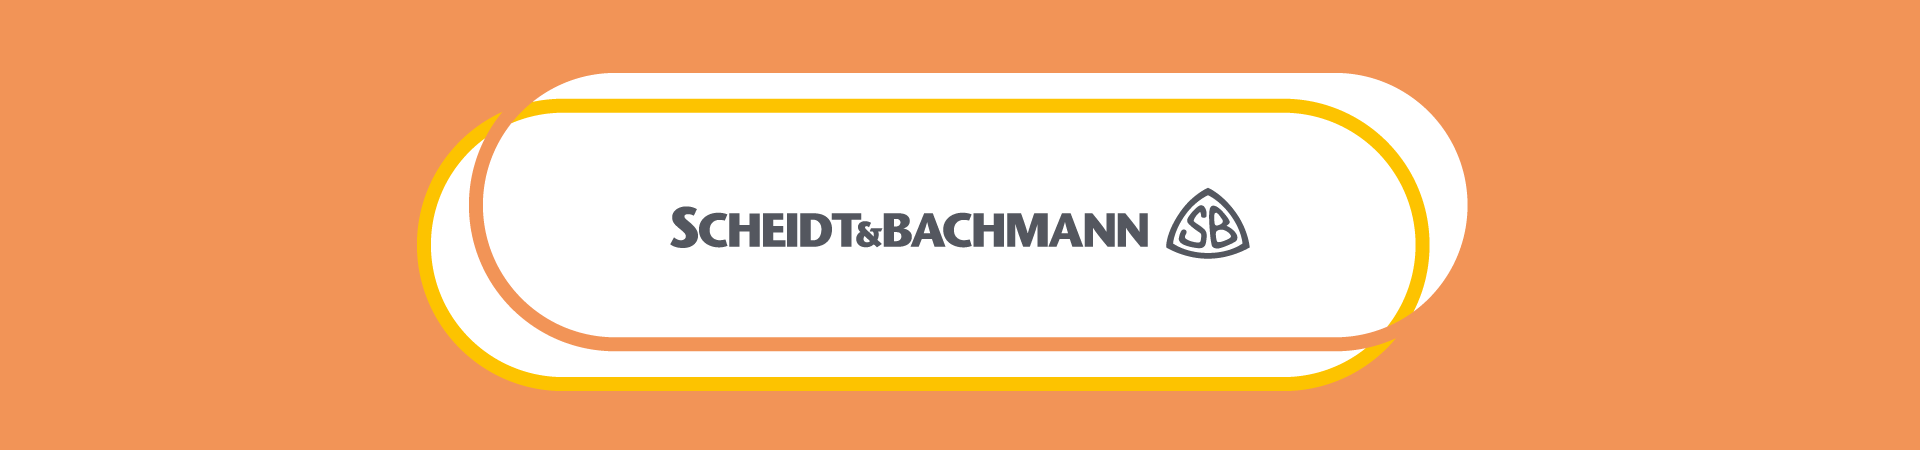 Scheidt & Bachmann nutzt parkoneer für digitales Parkraummanagement 